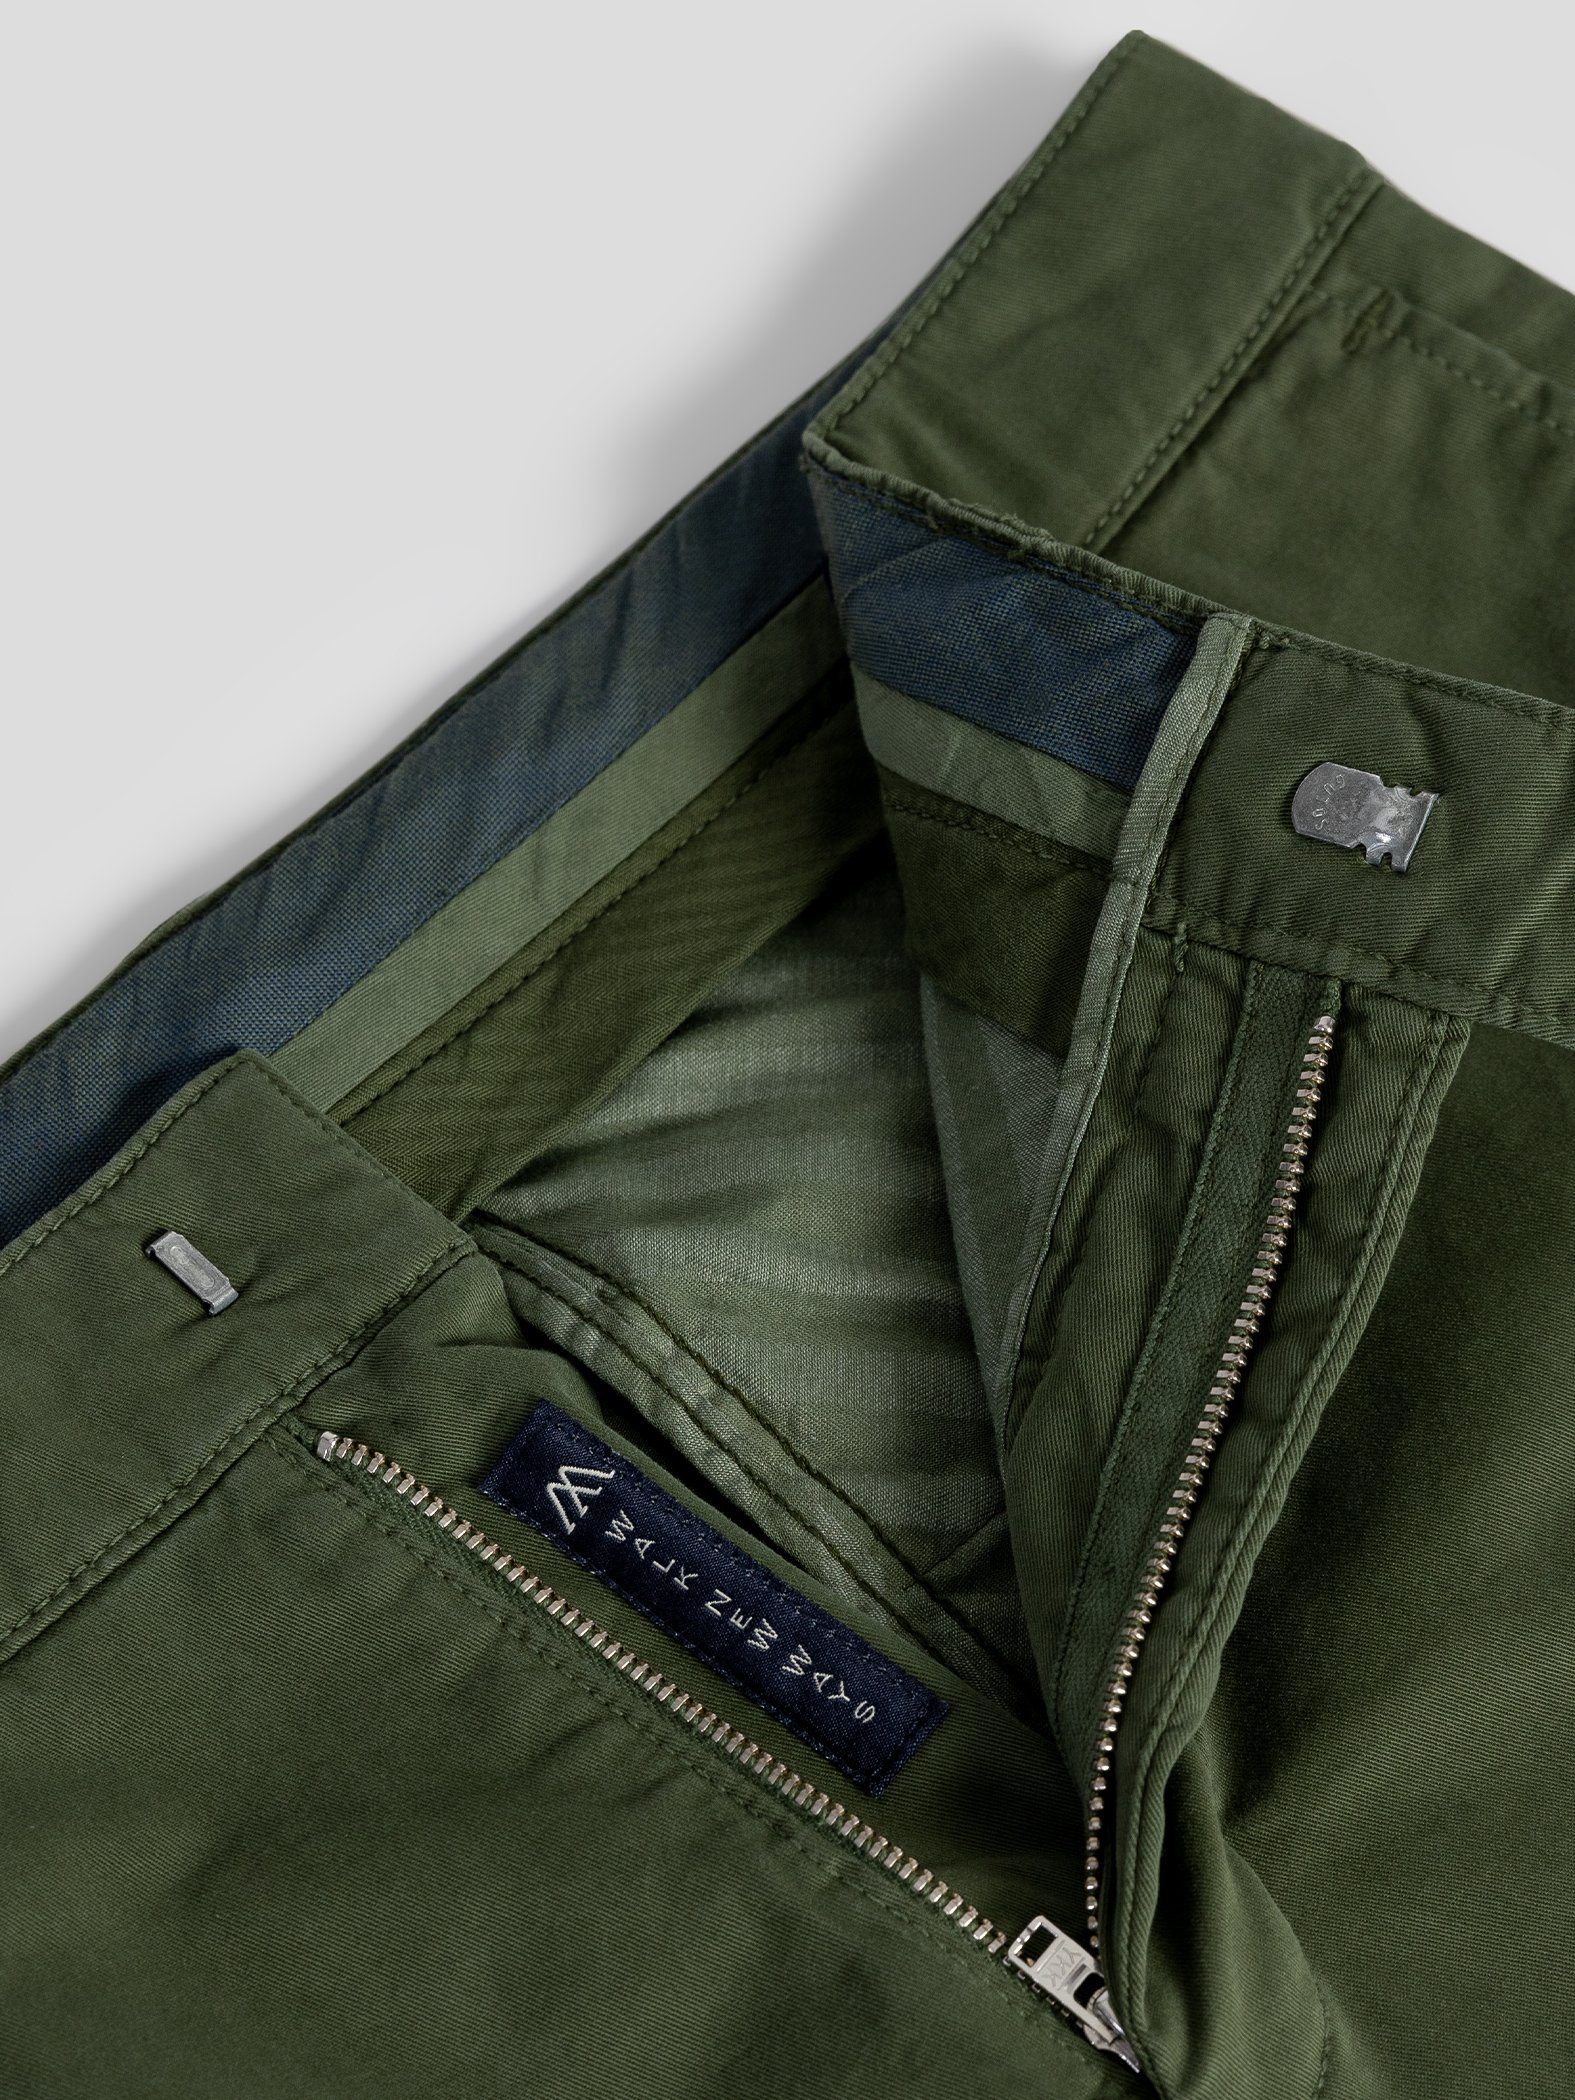 TwoMates Shorts Shorts mit Farbauswahl, elastischem Bund, GOTS-zertifiziert Grün